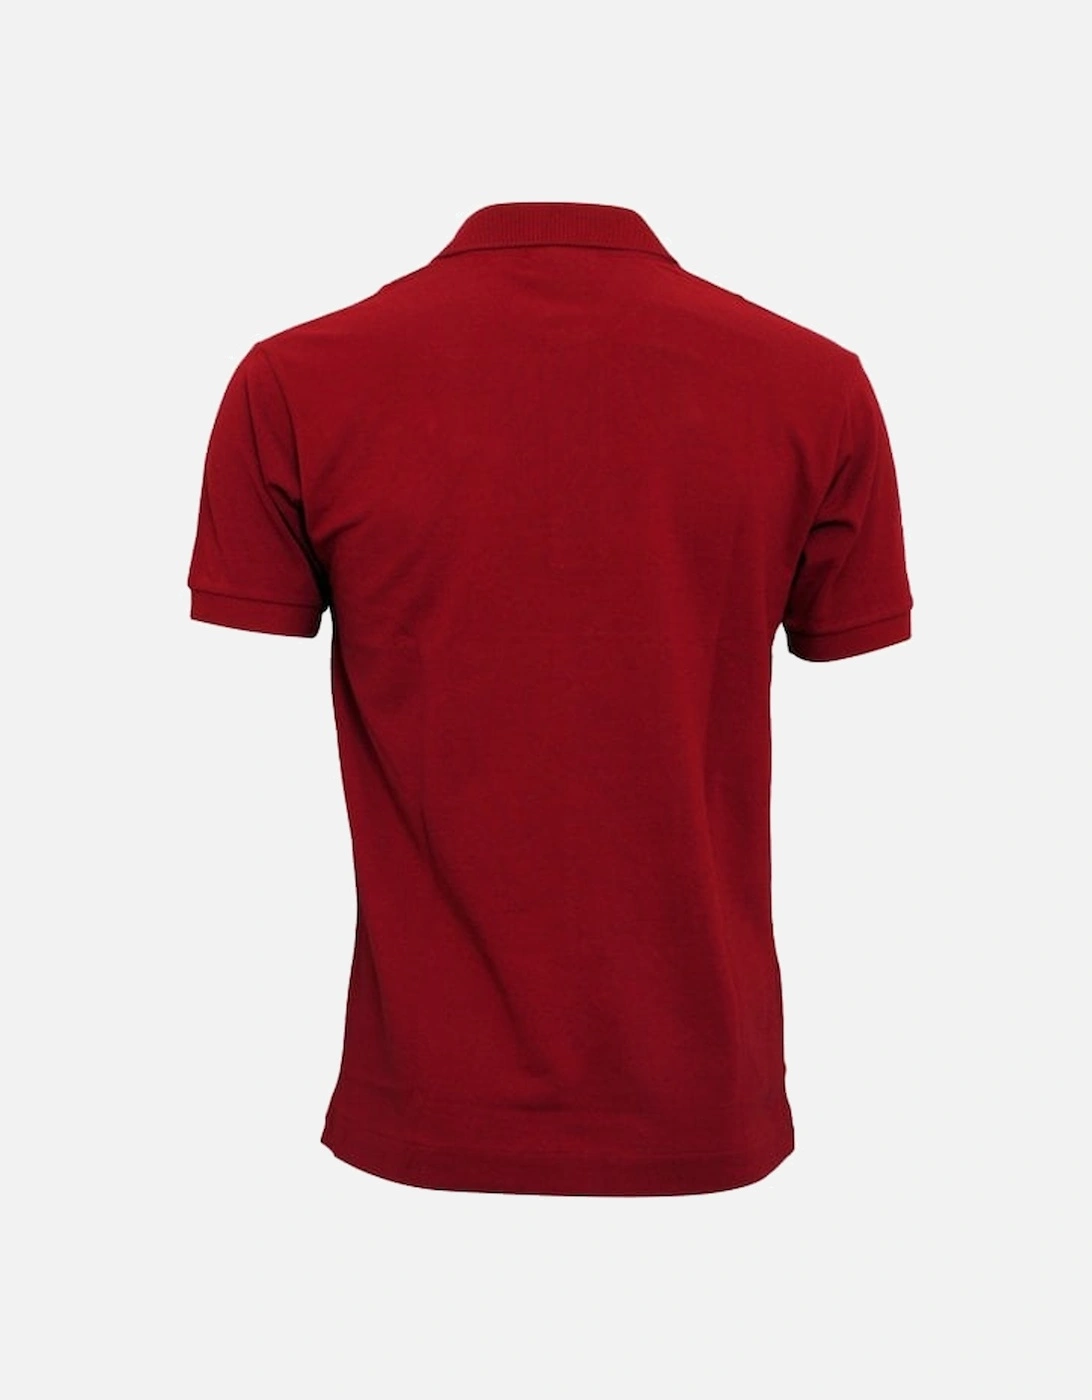 Classic Fit Pique Polo Shirt, Bordeaux Red